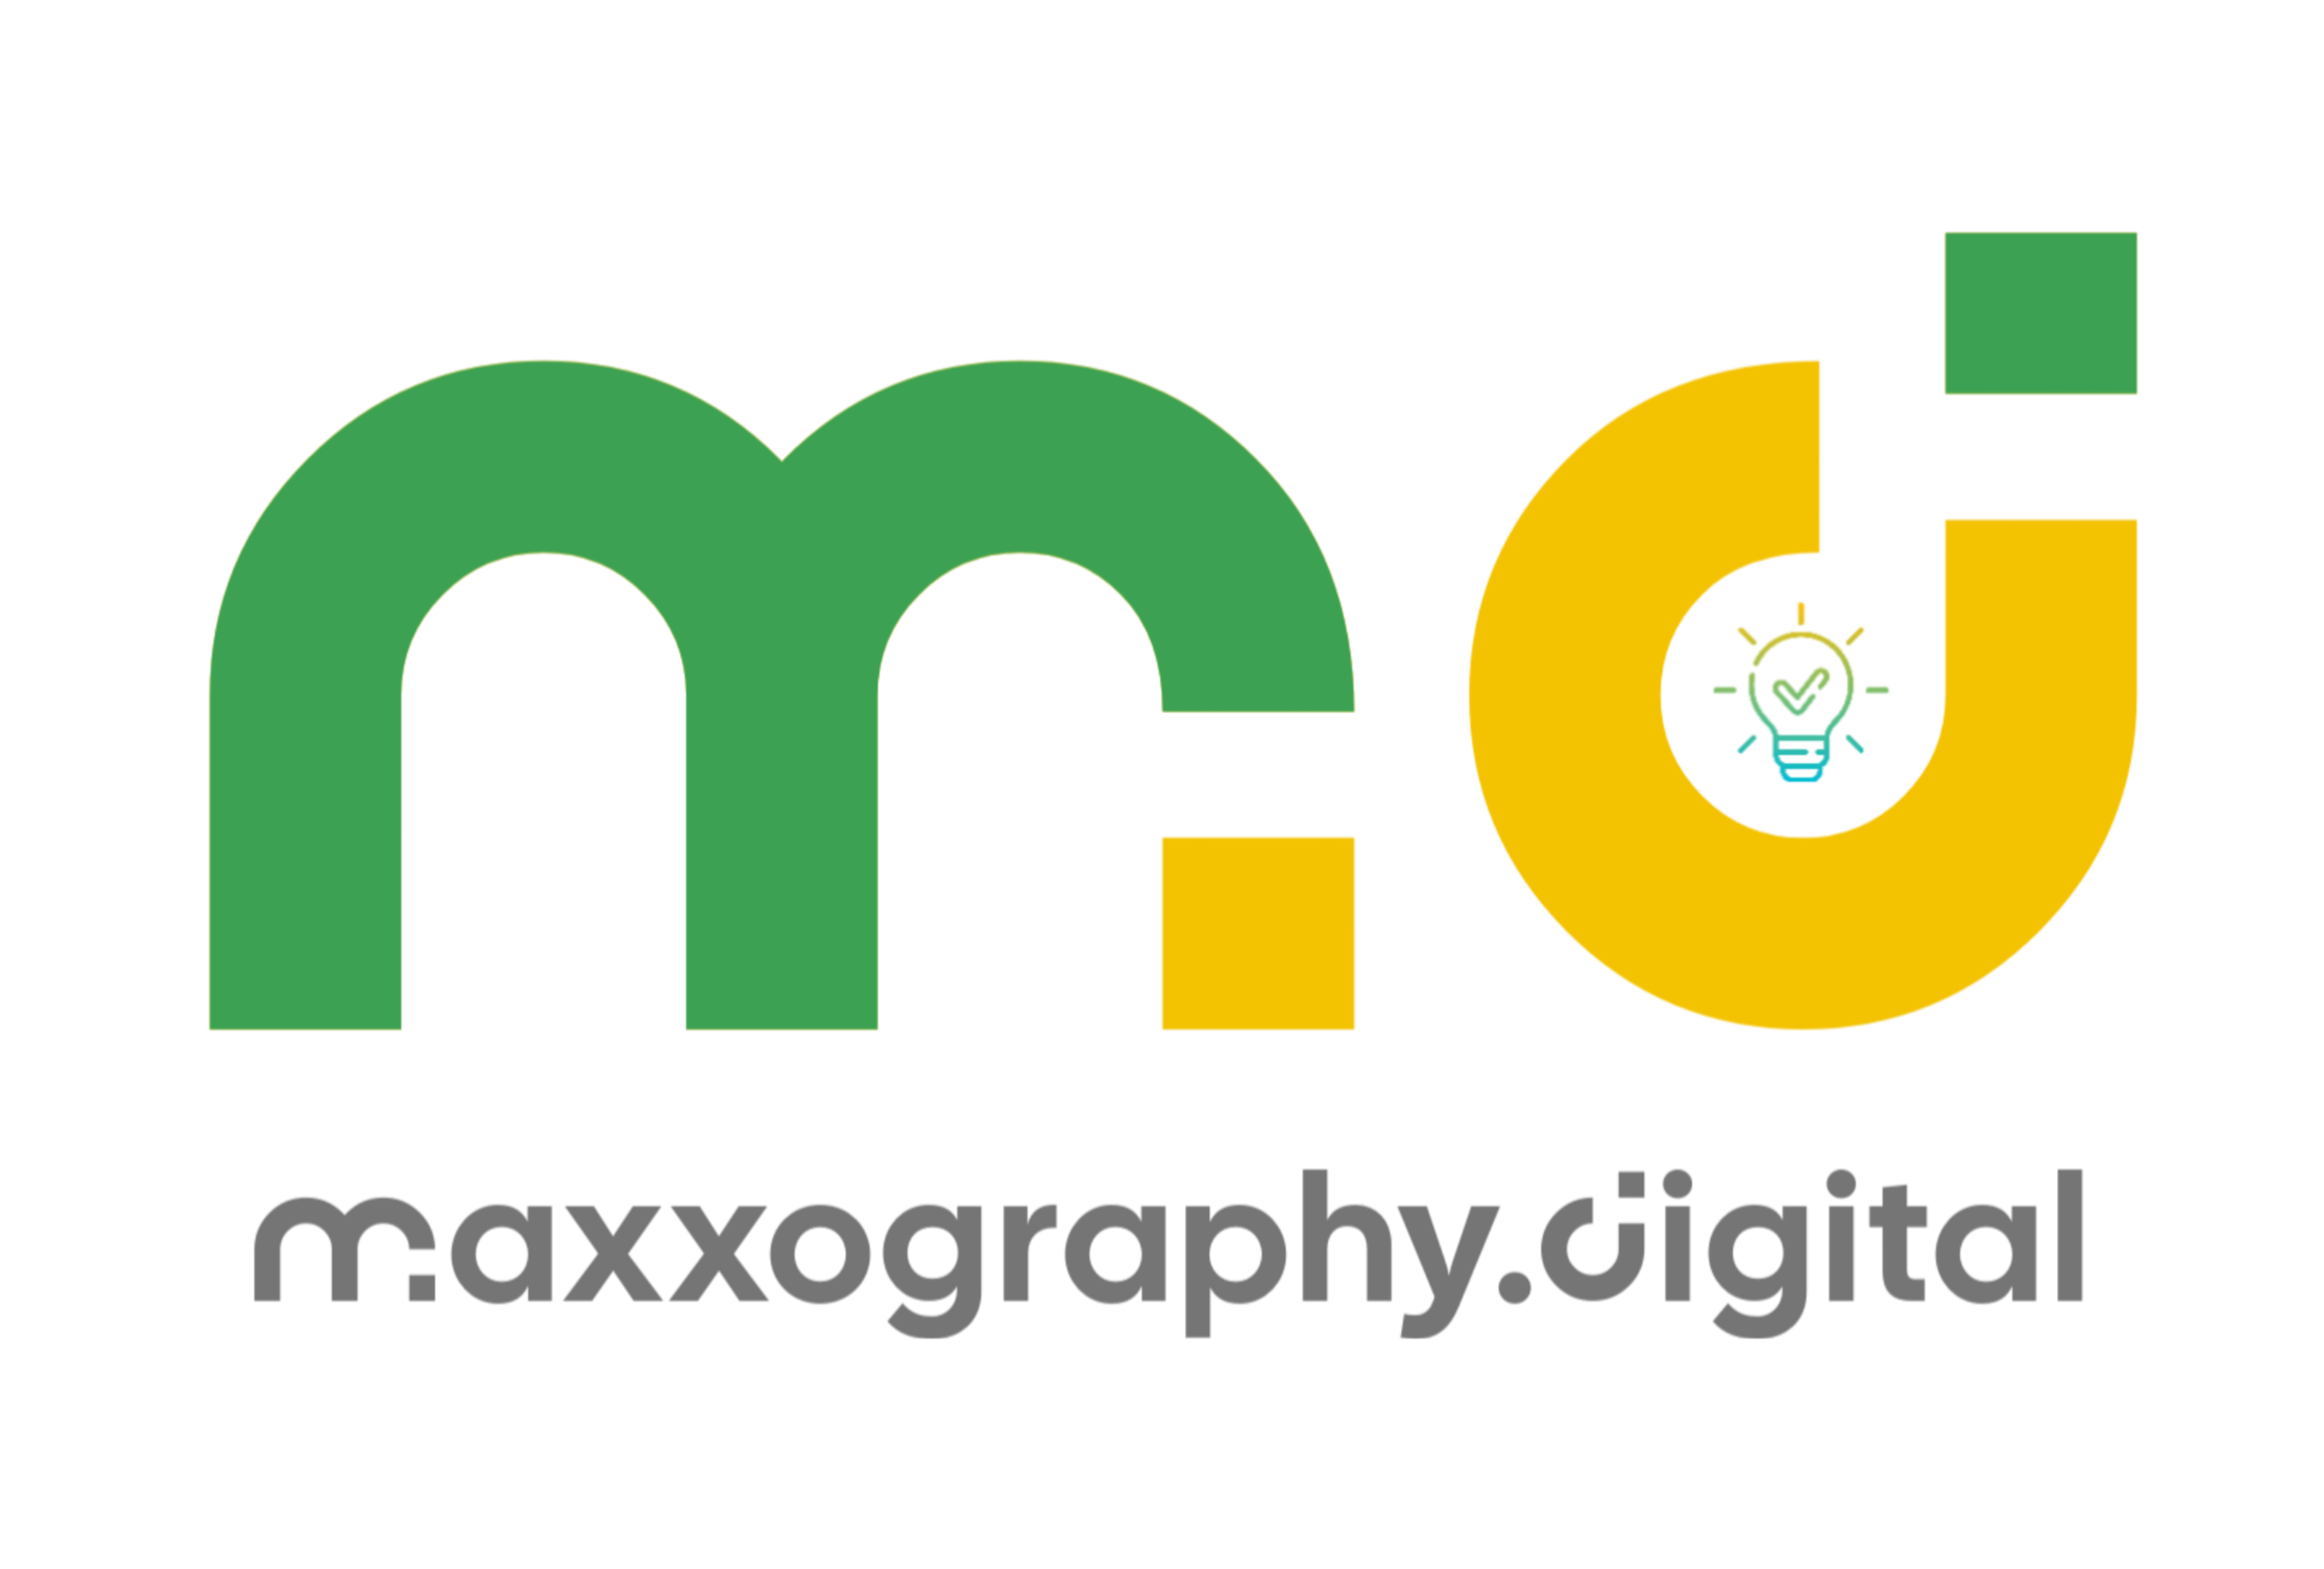 Maxxography Digital